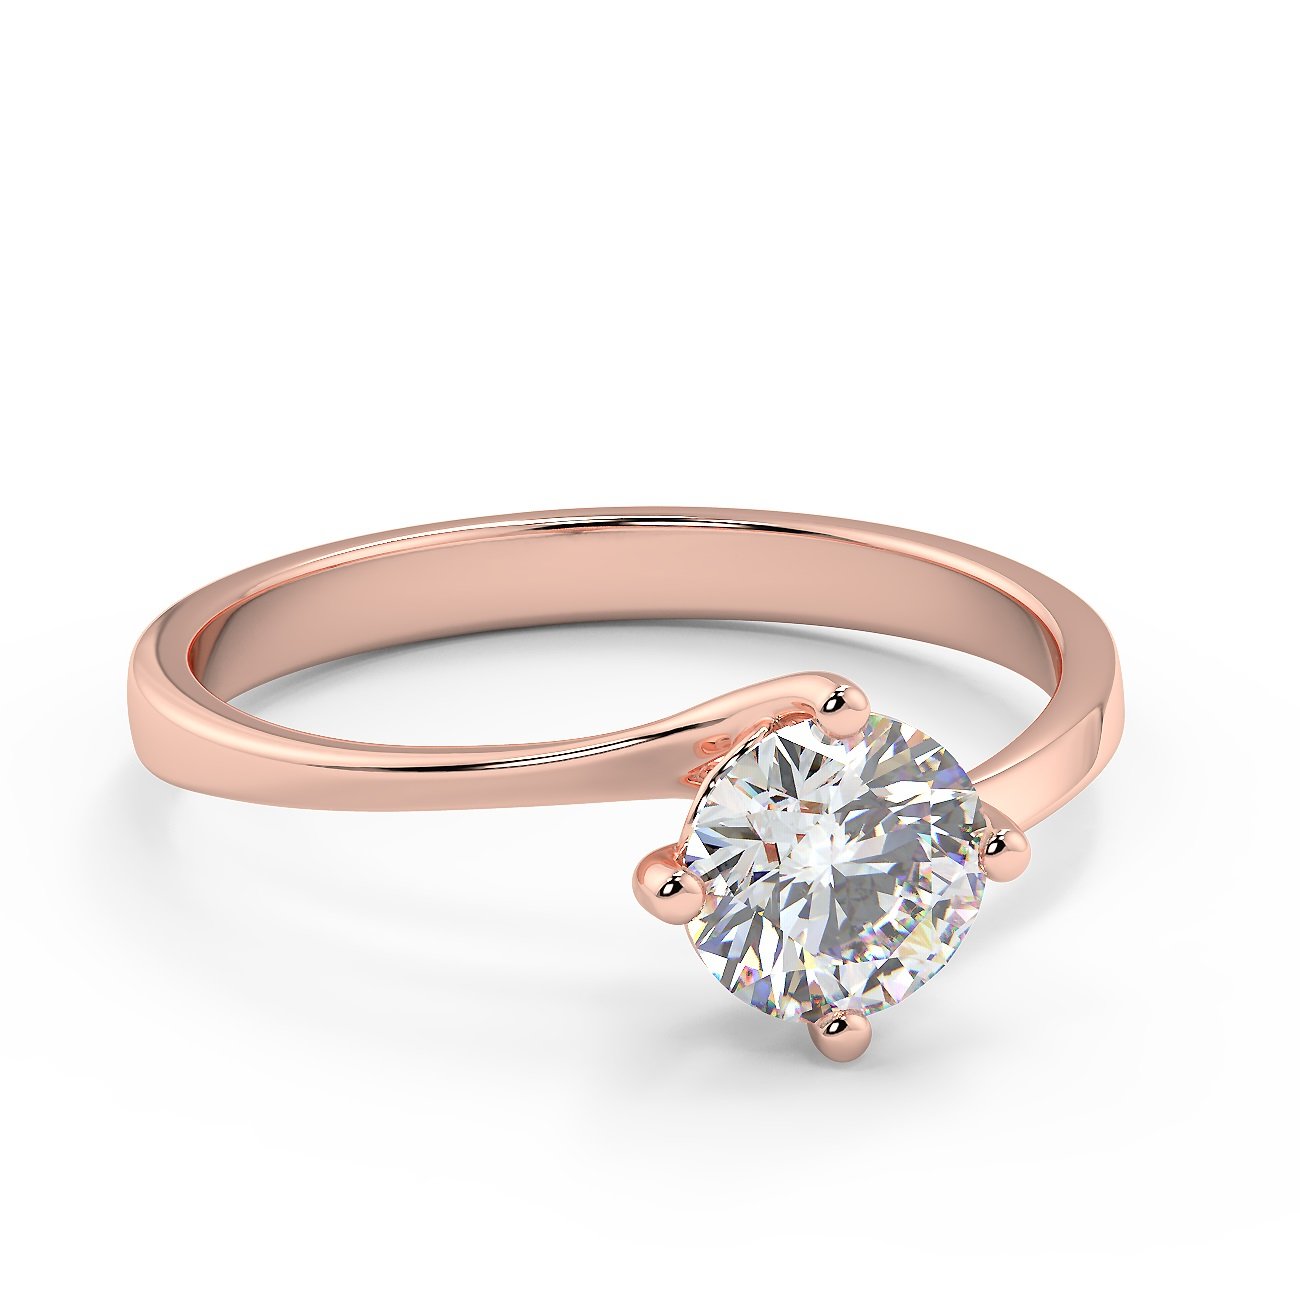 Anello di fidanzamento solitario con diamante in Oro Rosa 18ct - R998